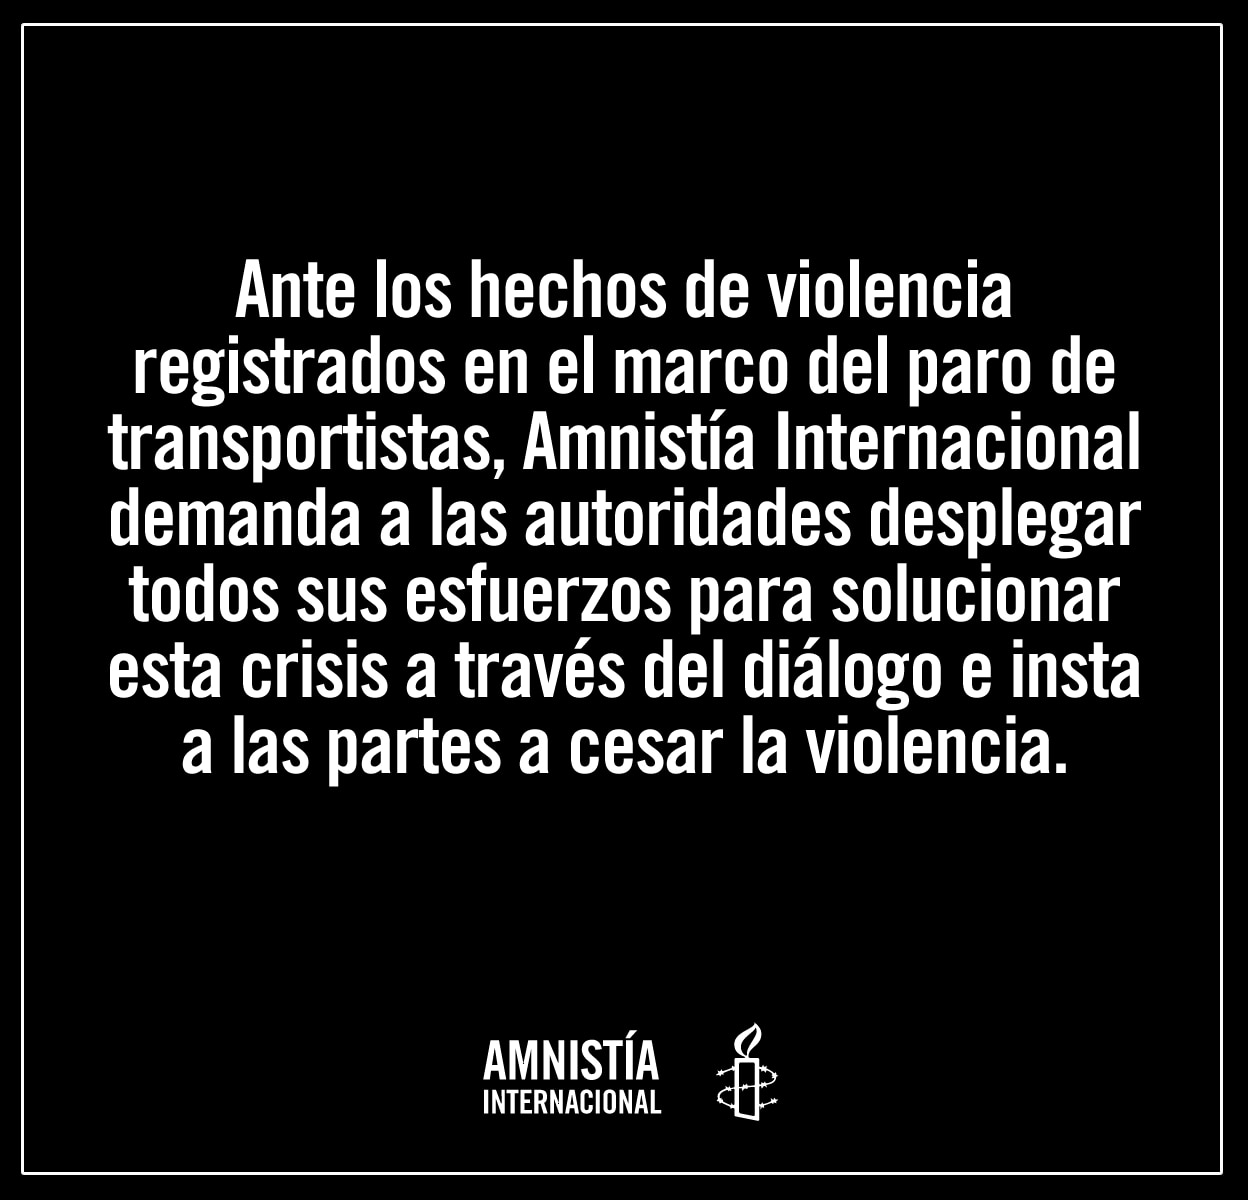 Amnistía Internacional Perú